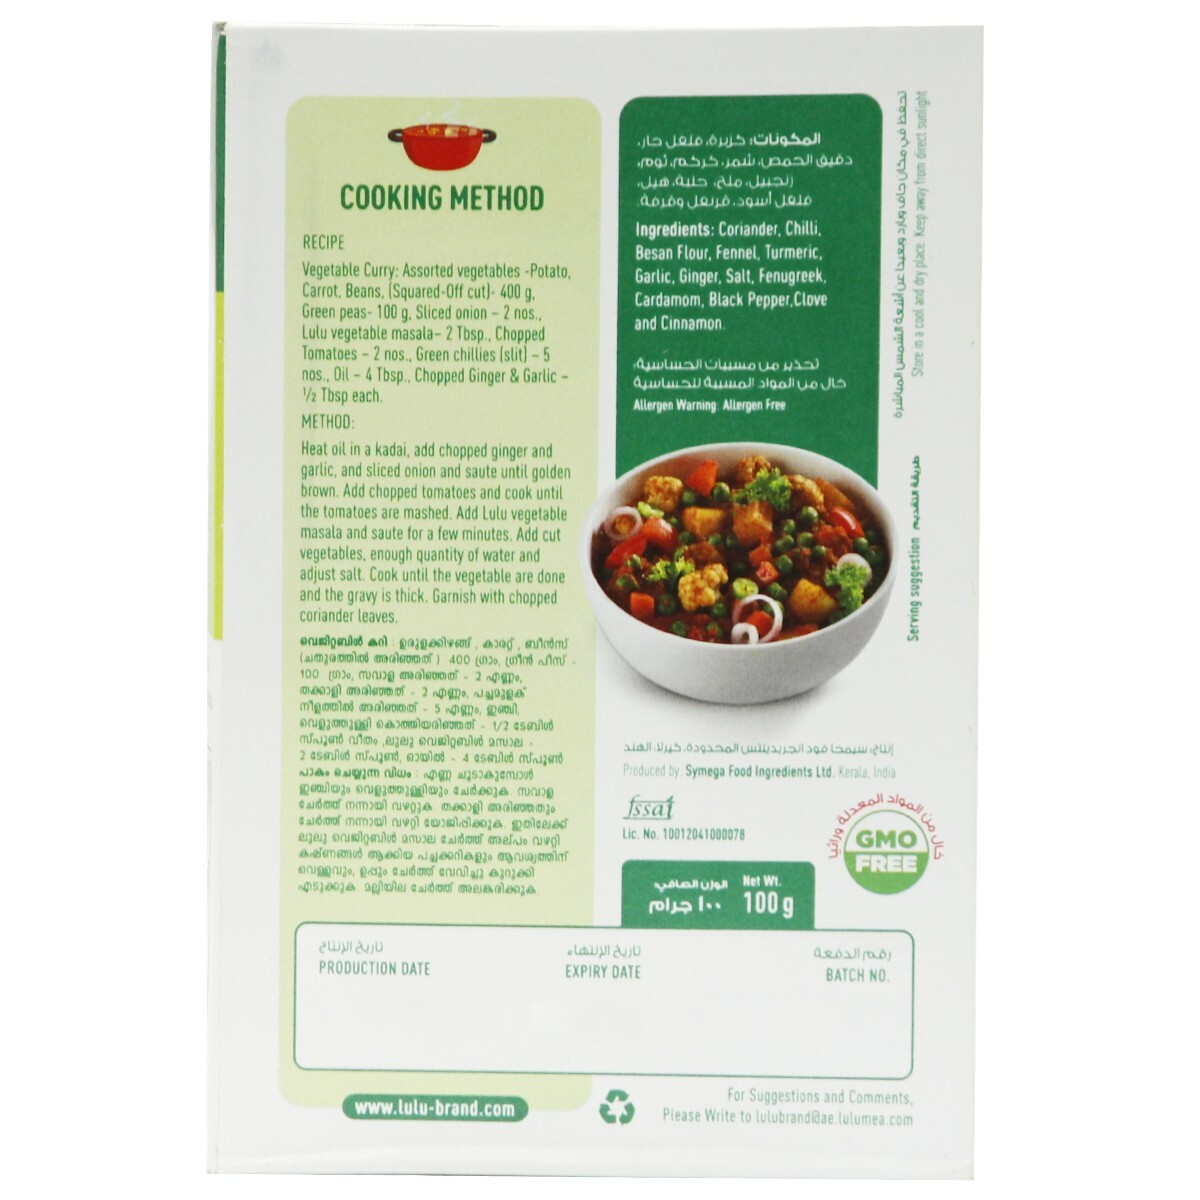 Buy Lulu Vegetable Masala 100g Online - Lulu Hypermarket India